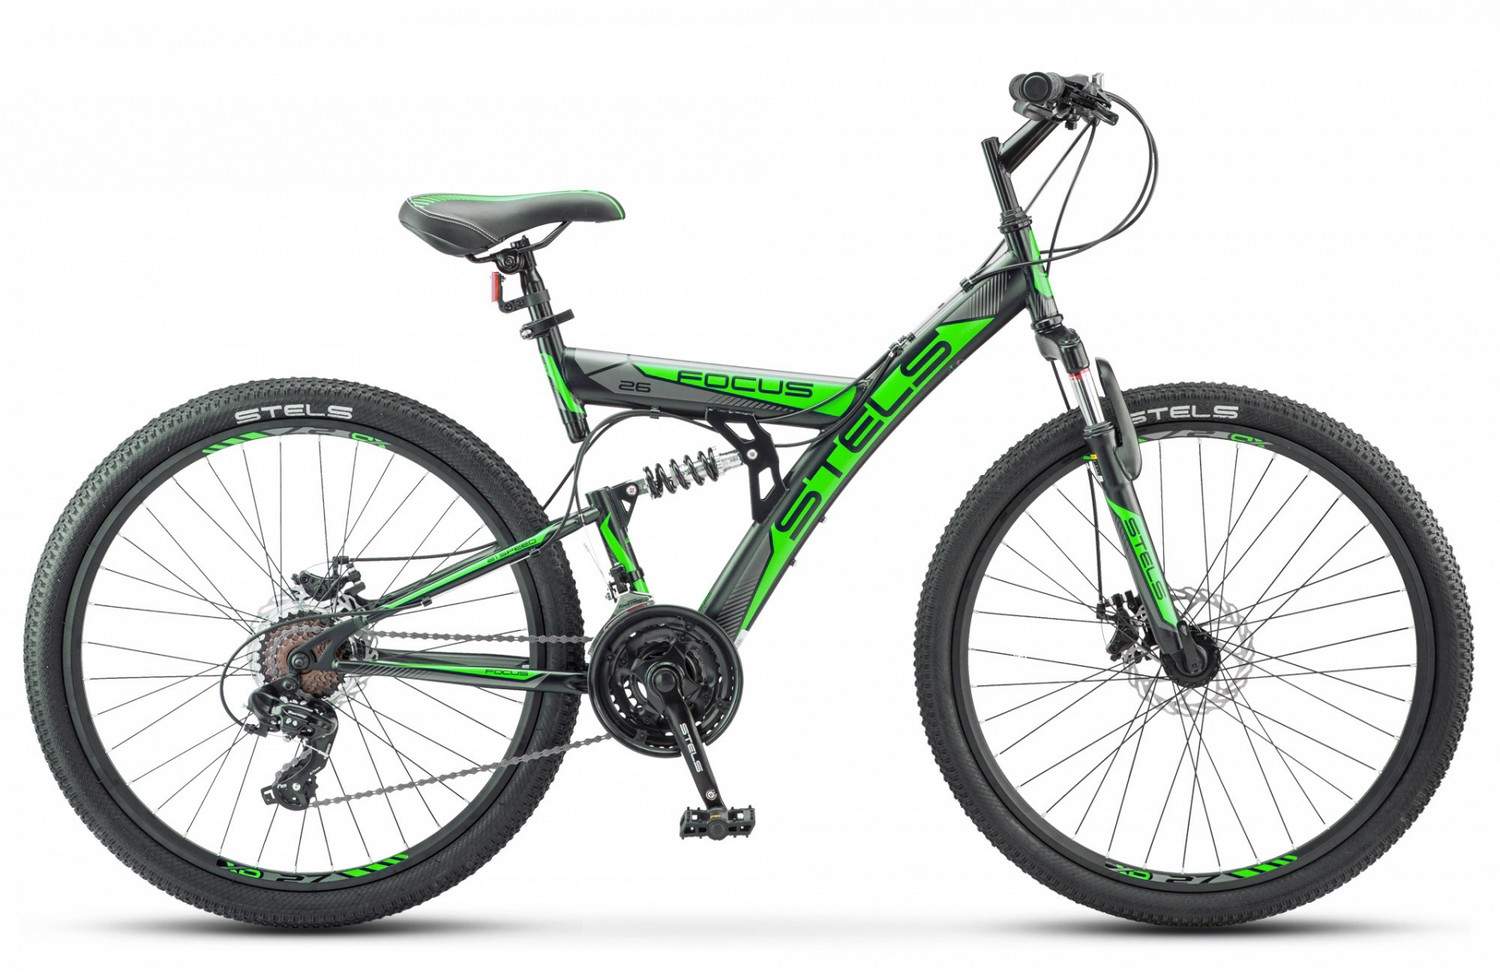 Stels Велосипед Focus MD 26 21 sp V010, 2020, ростовка 18, Черный, Зеленый